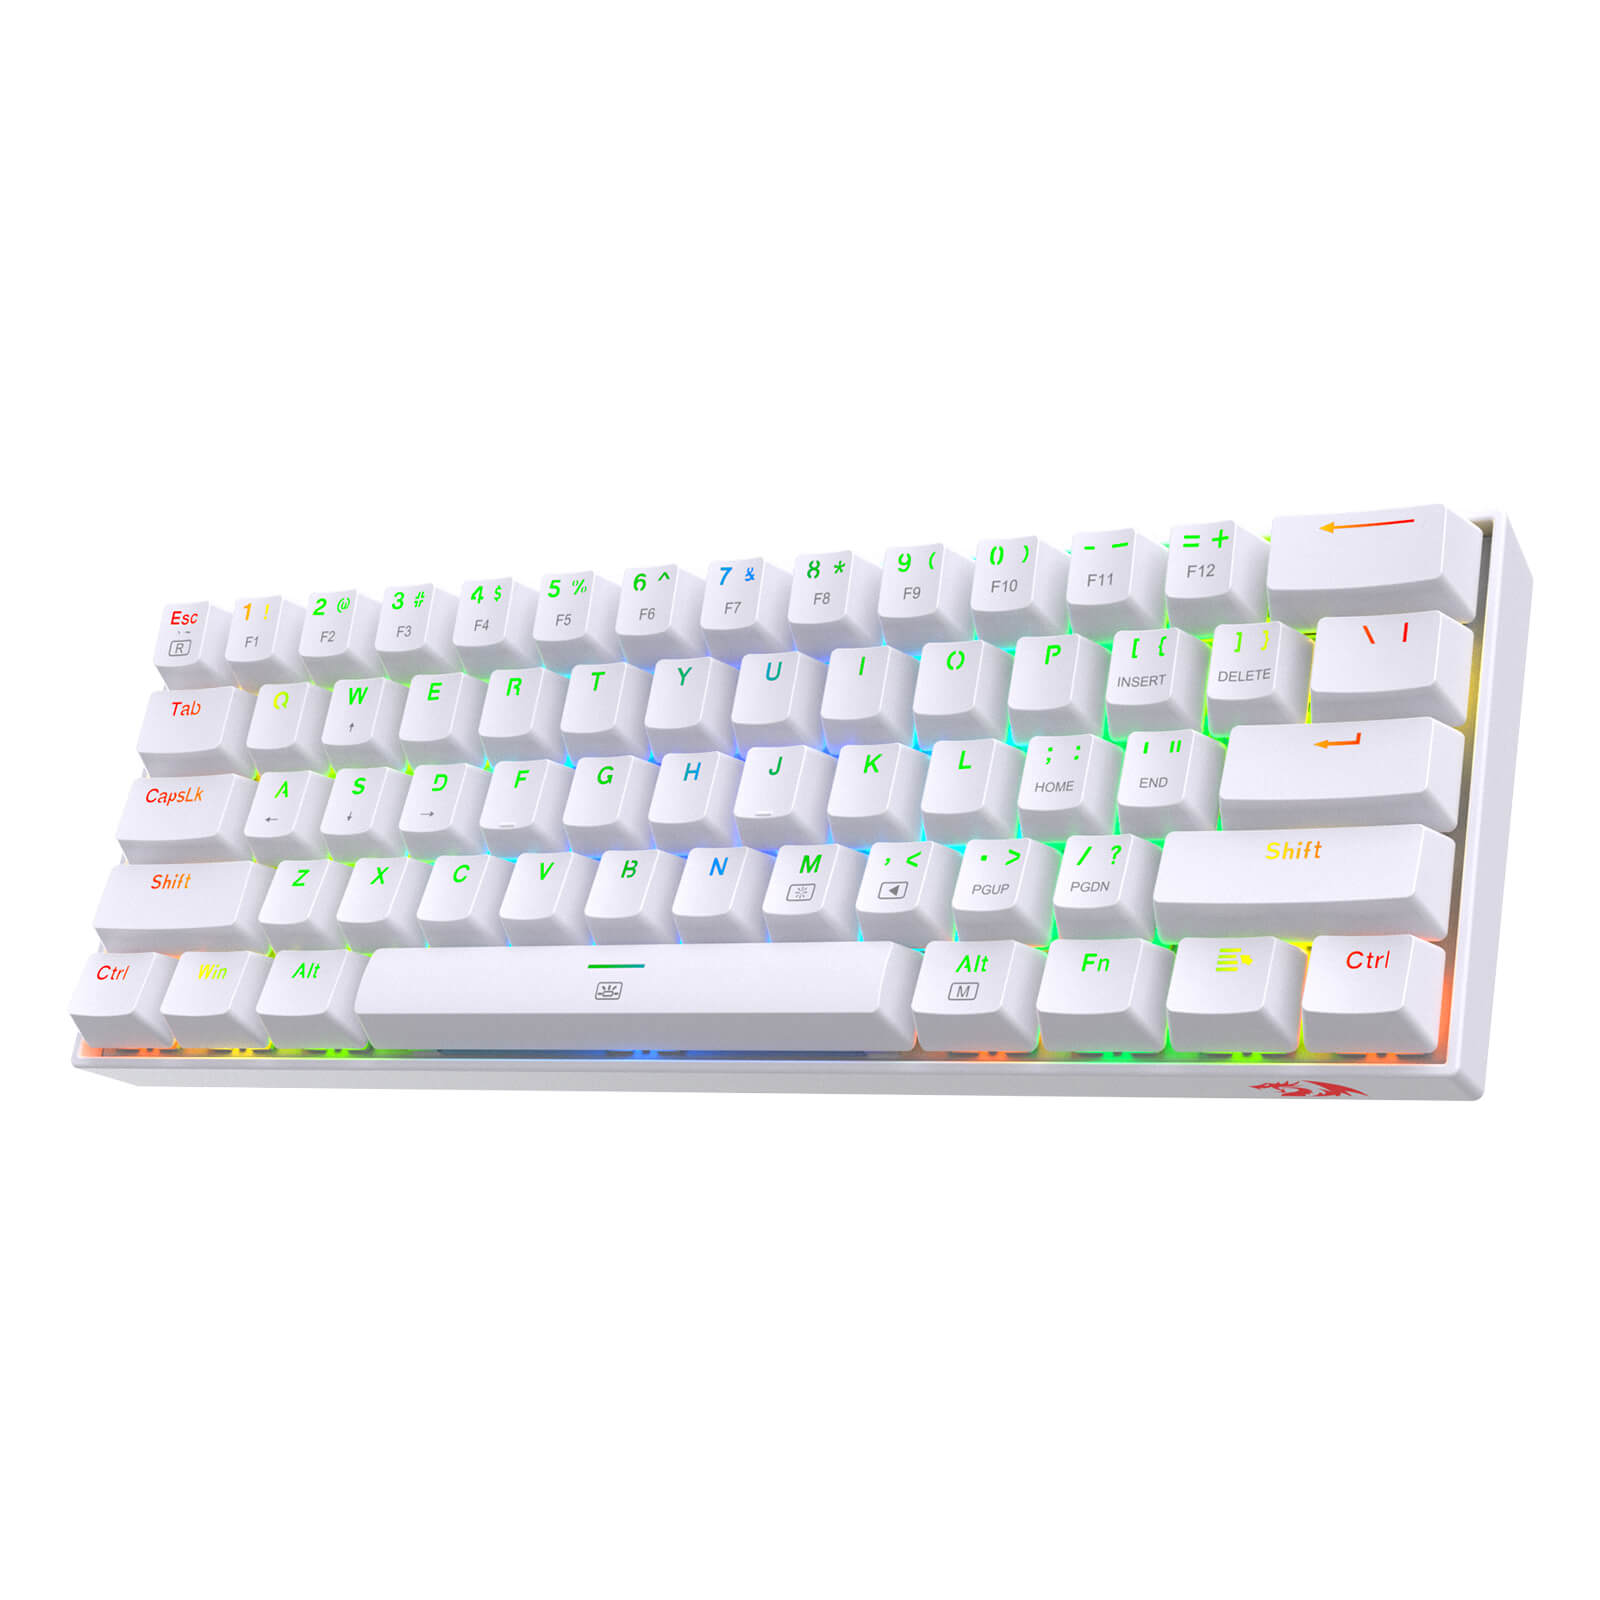 k630 keyboard(Open-box)